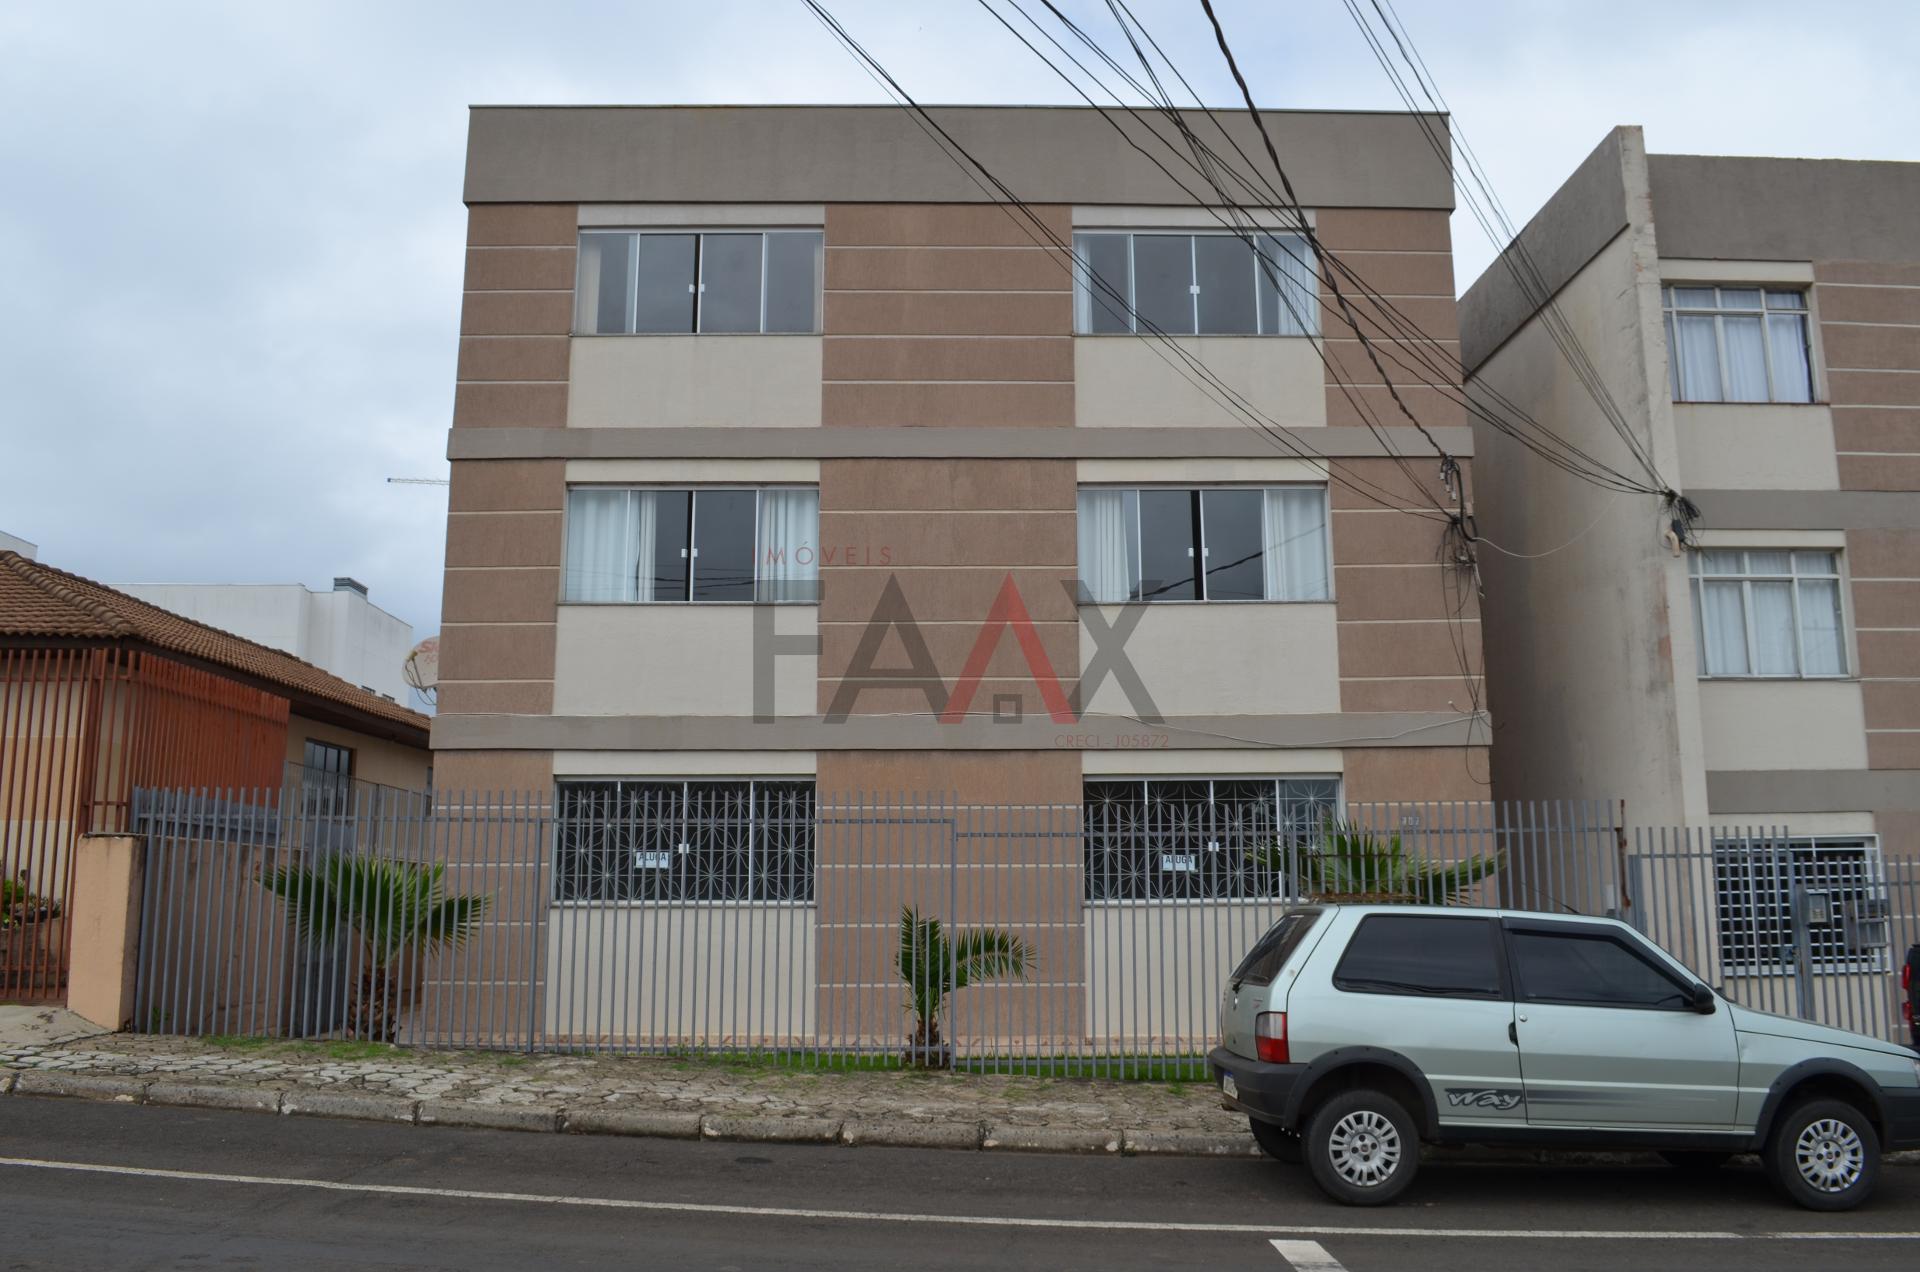 Apartamento com 3 dormitórios para locação, CENTRO, GUARAPUAVA - PR